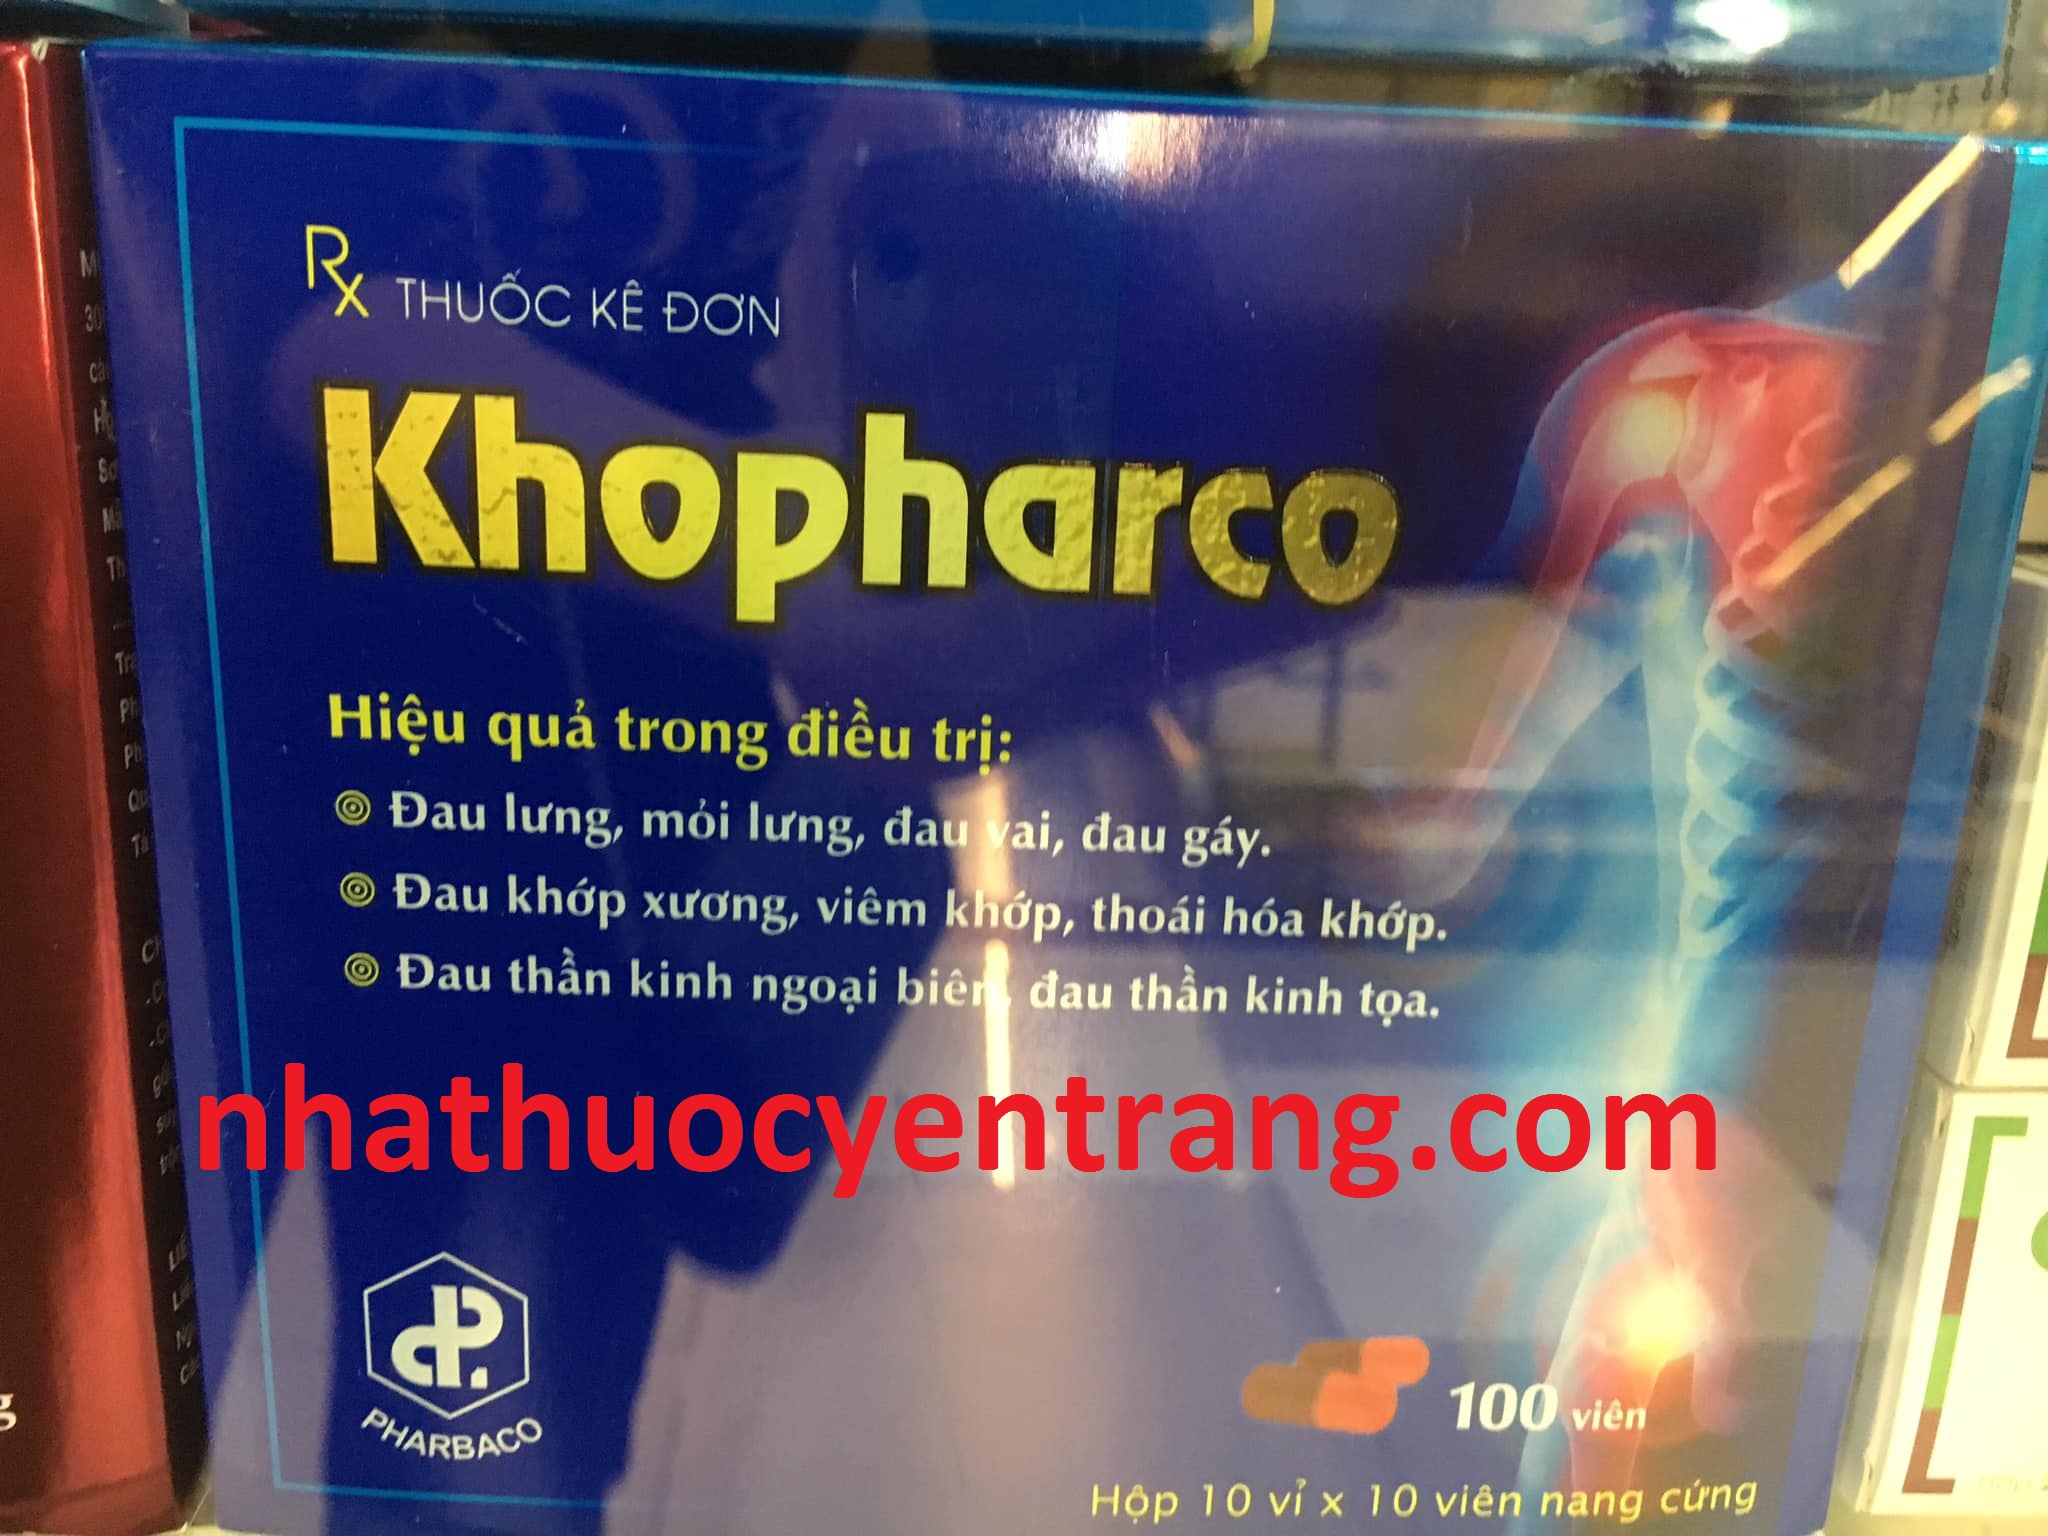 Khopharco